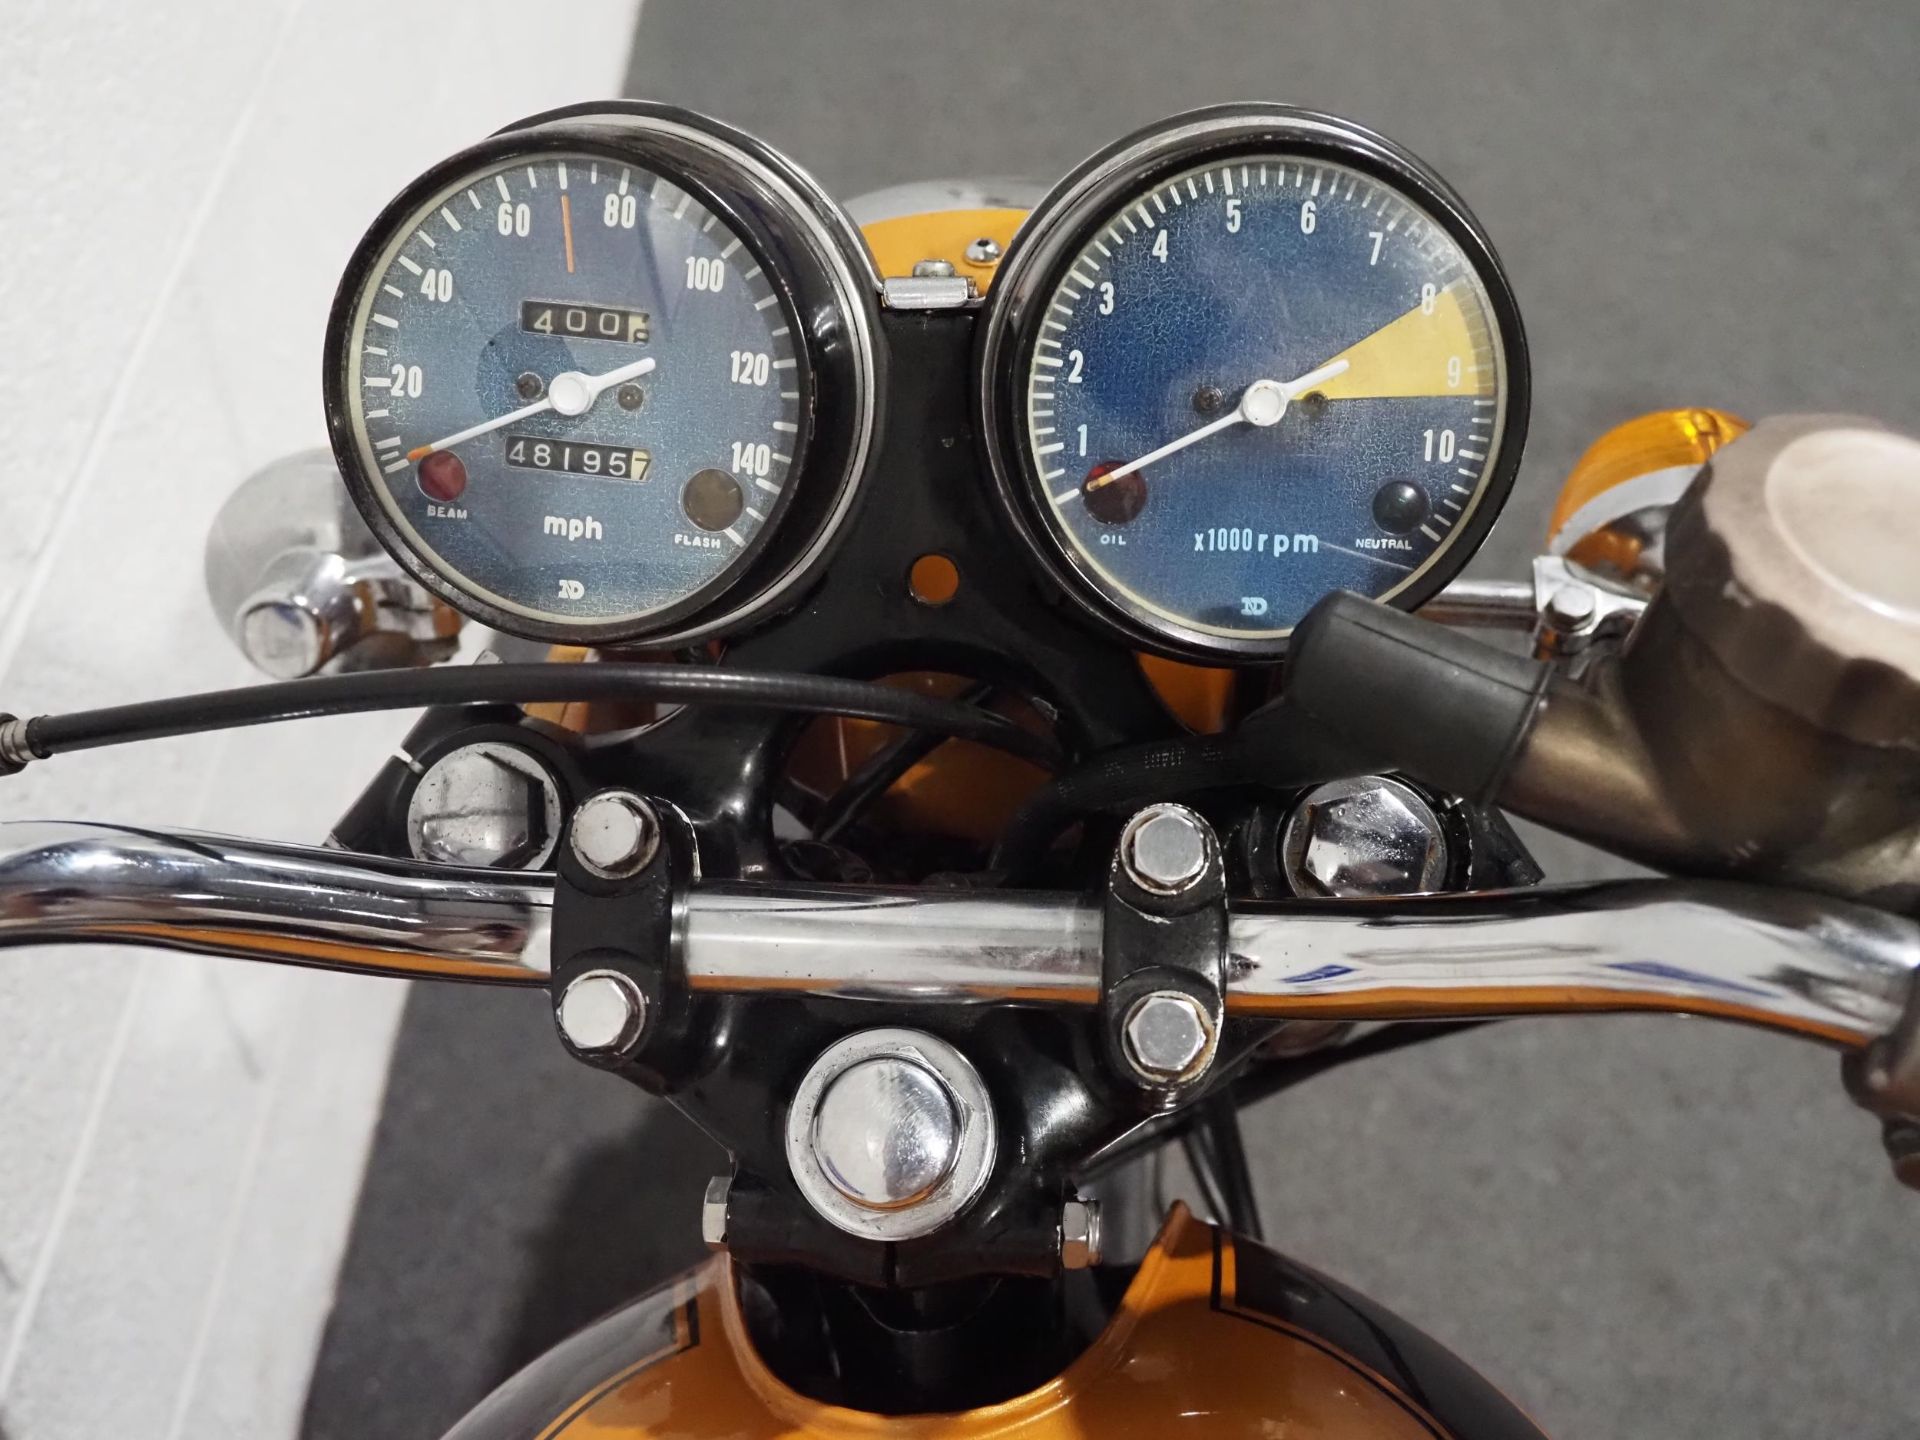 Honda 750-4 motorcycle, 1971, 750cc Frame no. CB7501118119 Engine no. CB7501117934 Runs and rides, - Image 6 of 8